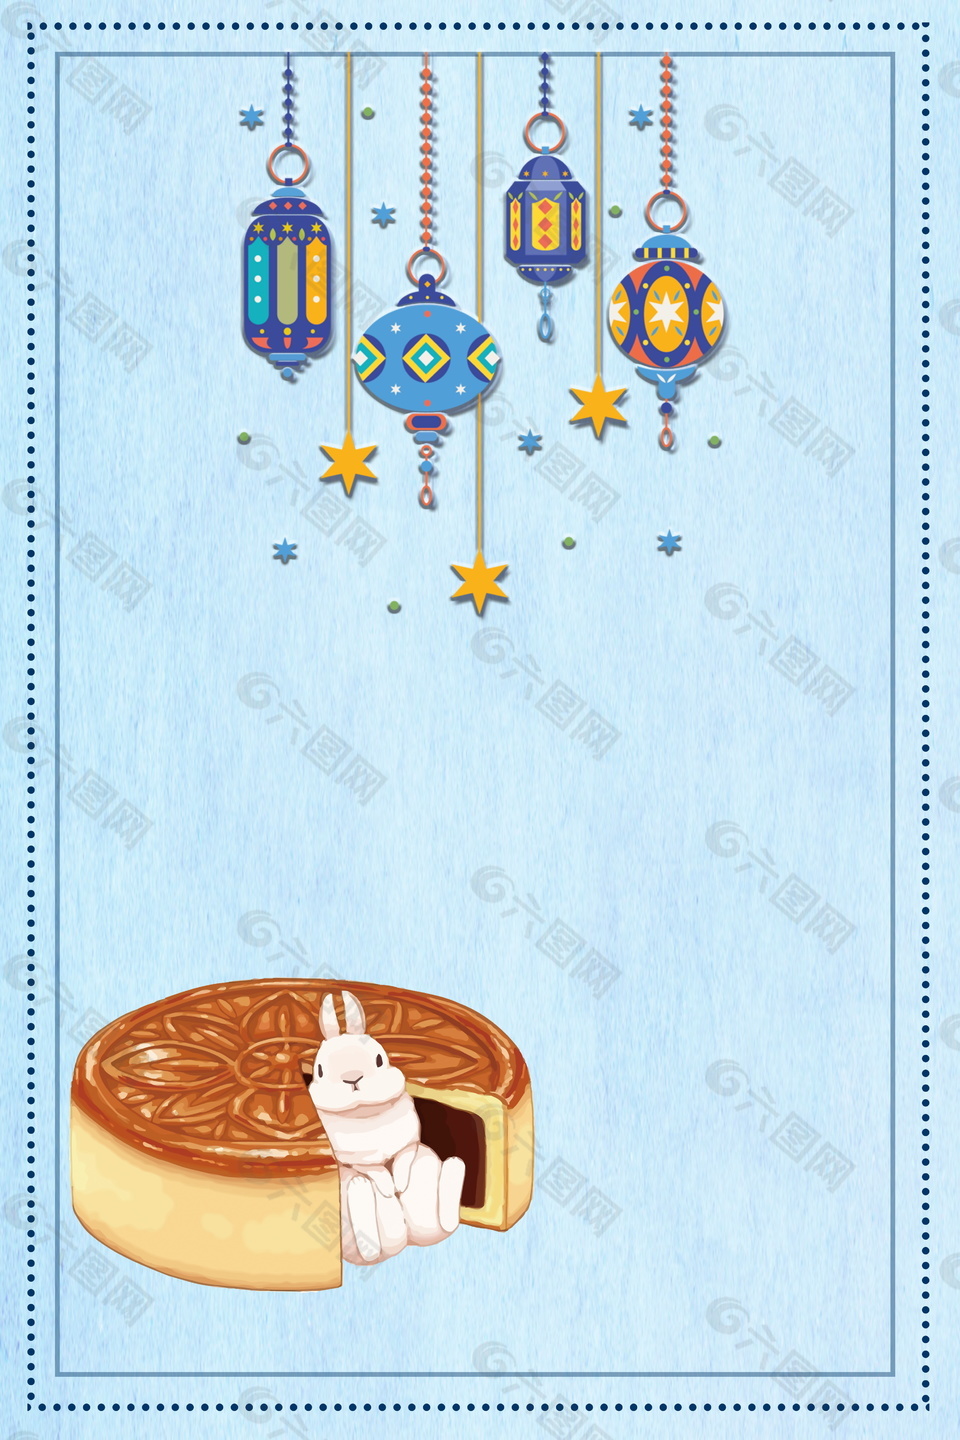 地中海风格挂件月饼边框背景素材